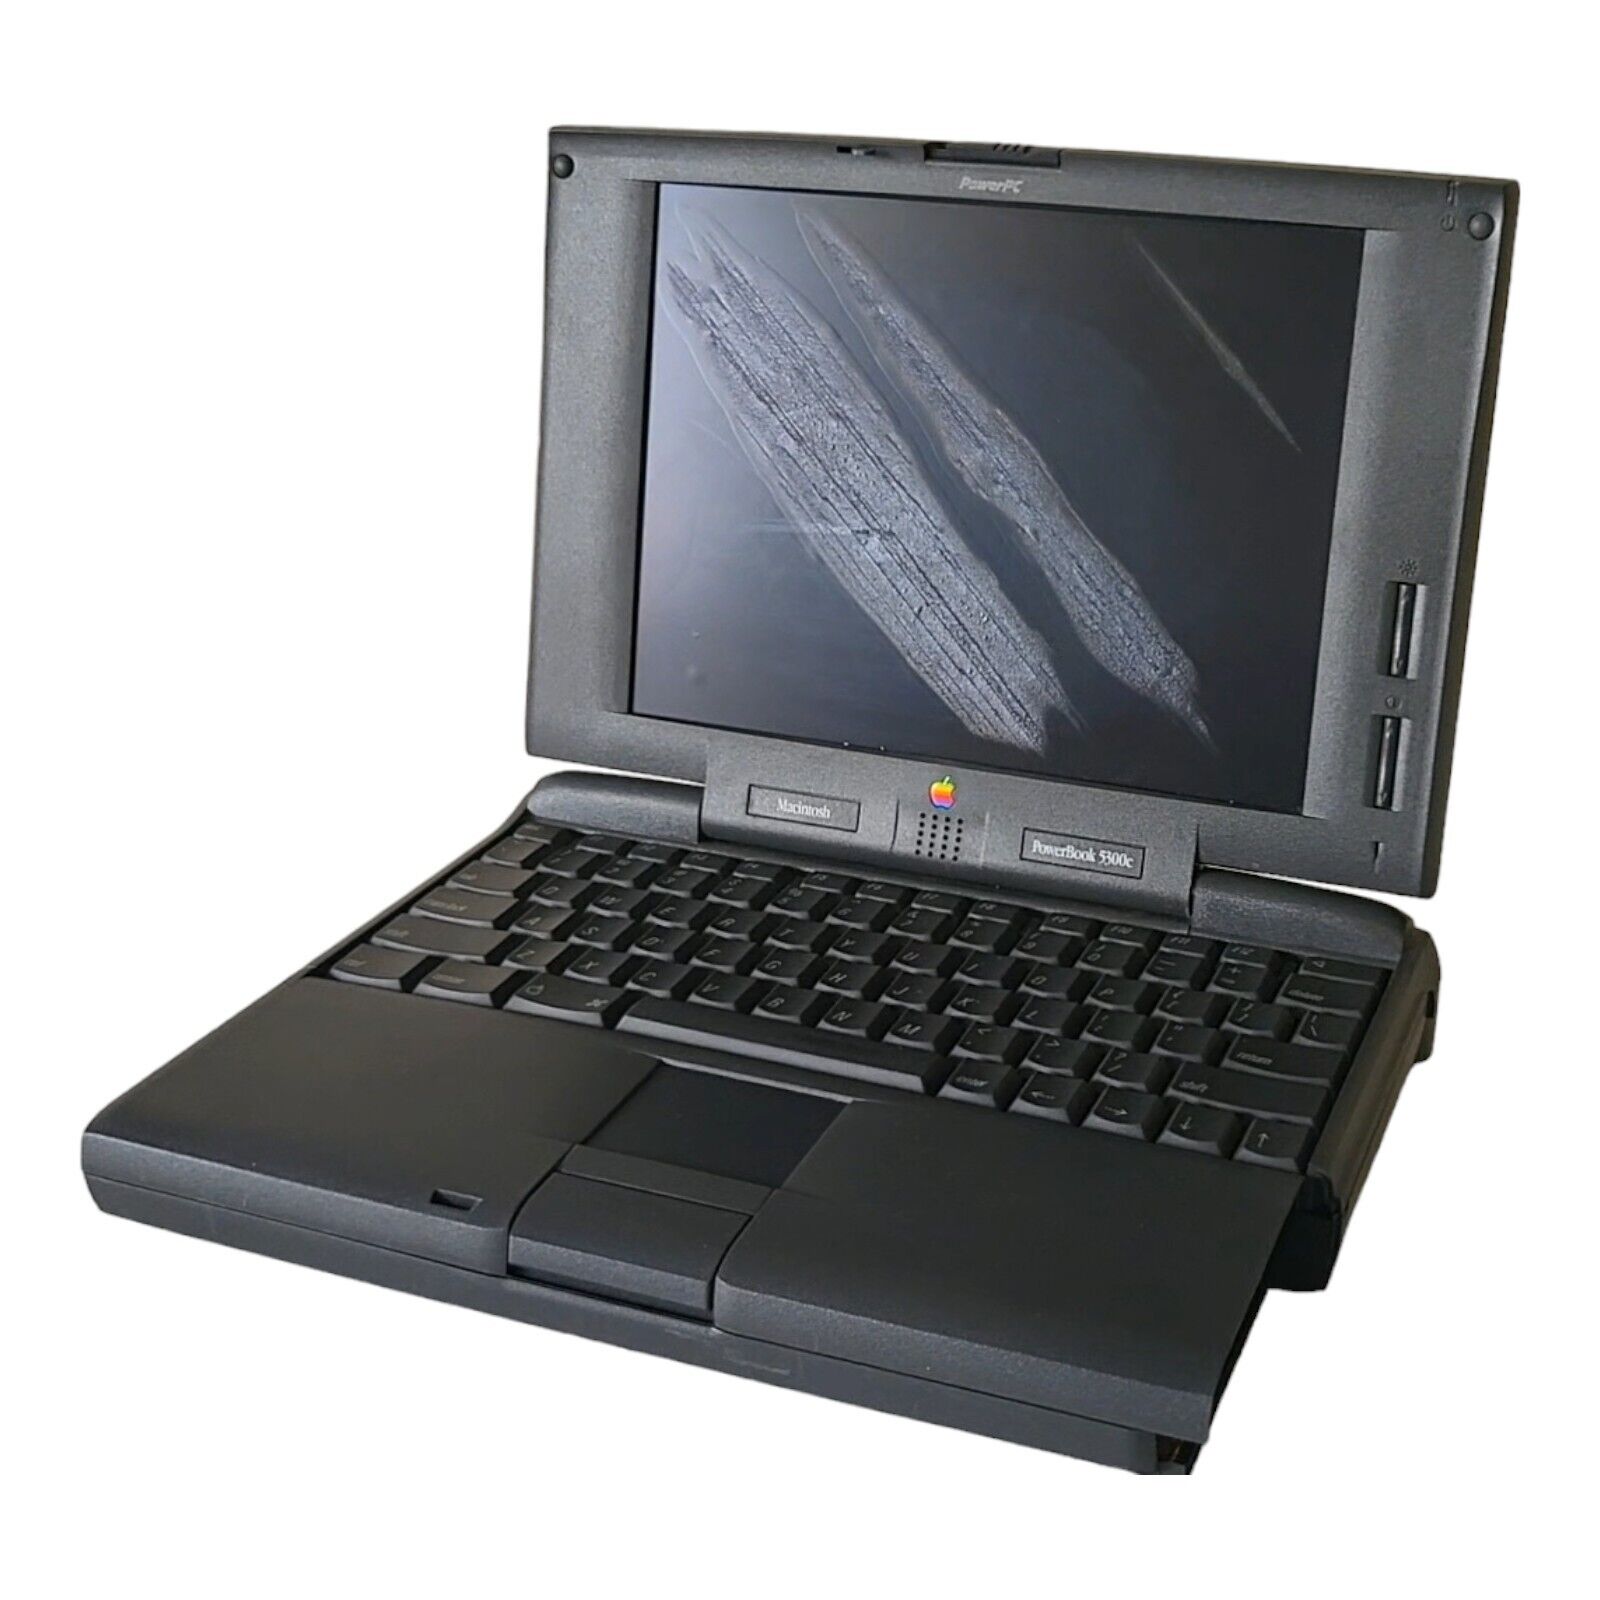 Rare Vintage Apple Macintosh PowerBook 5300c M2785 Retro Laptop 5300 - UNTESTED